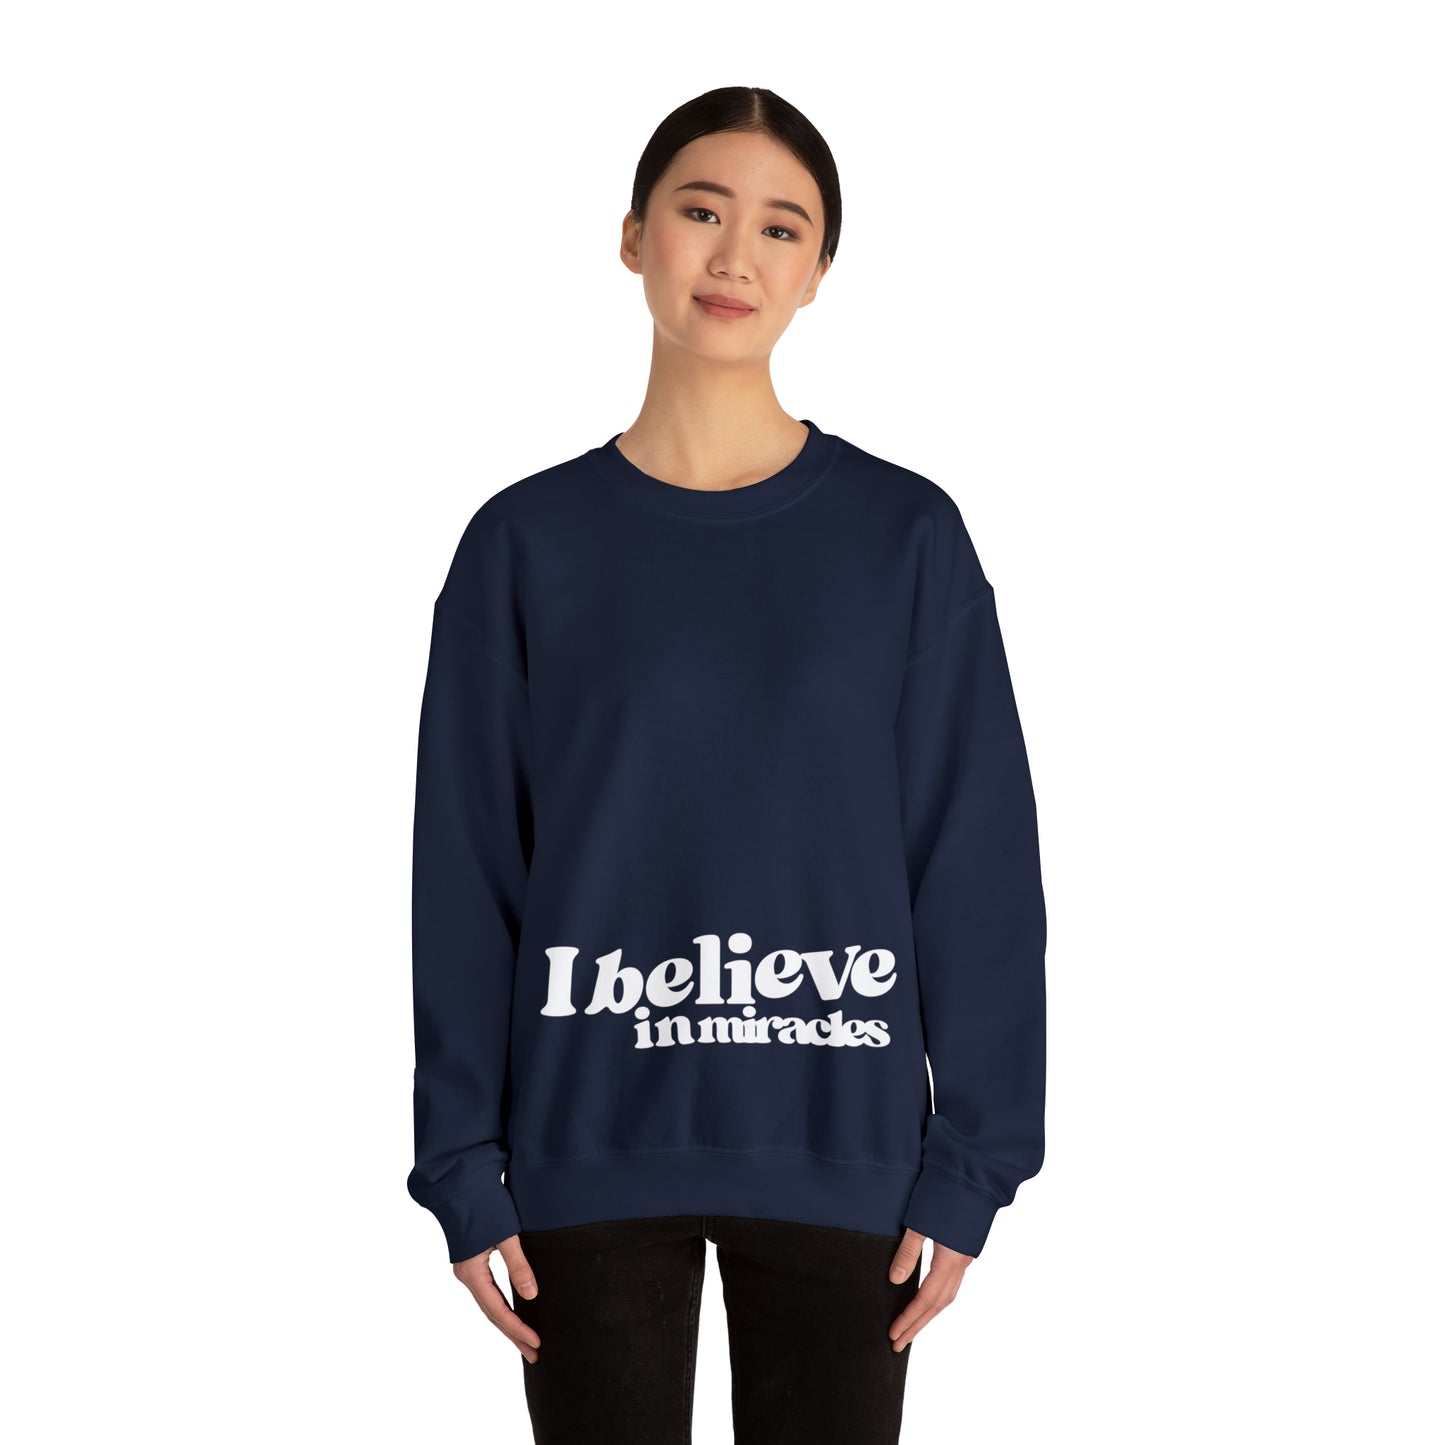 "I believe in miracles" Crewneck Sweatshirt